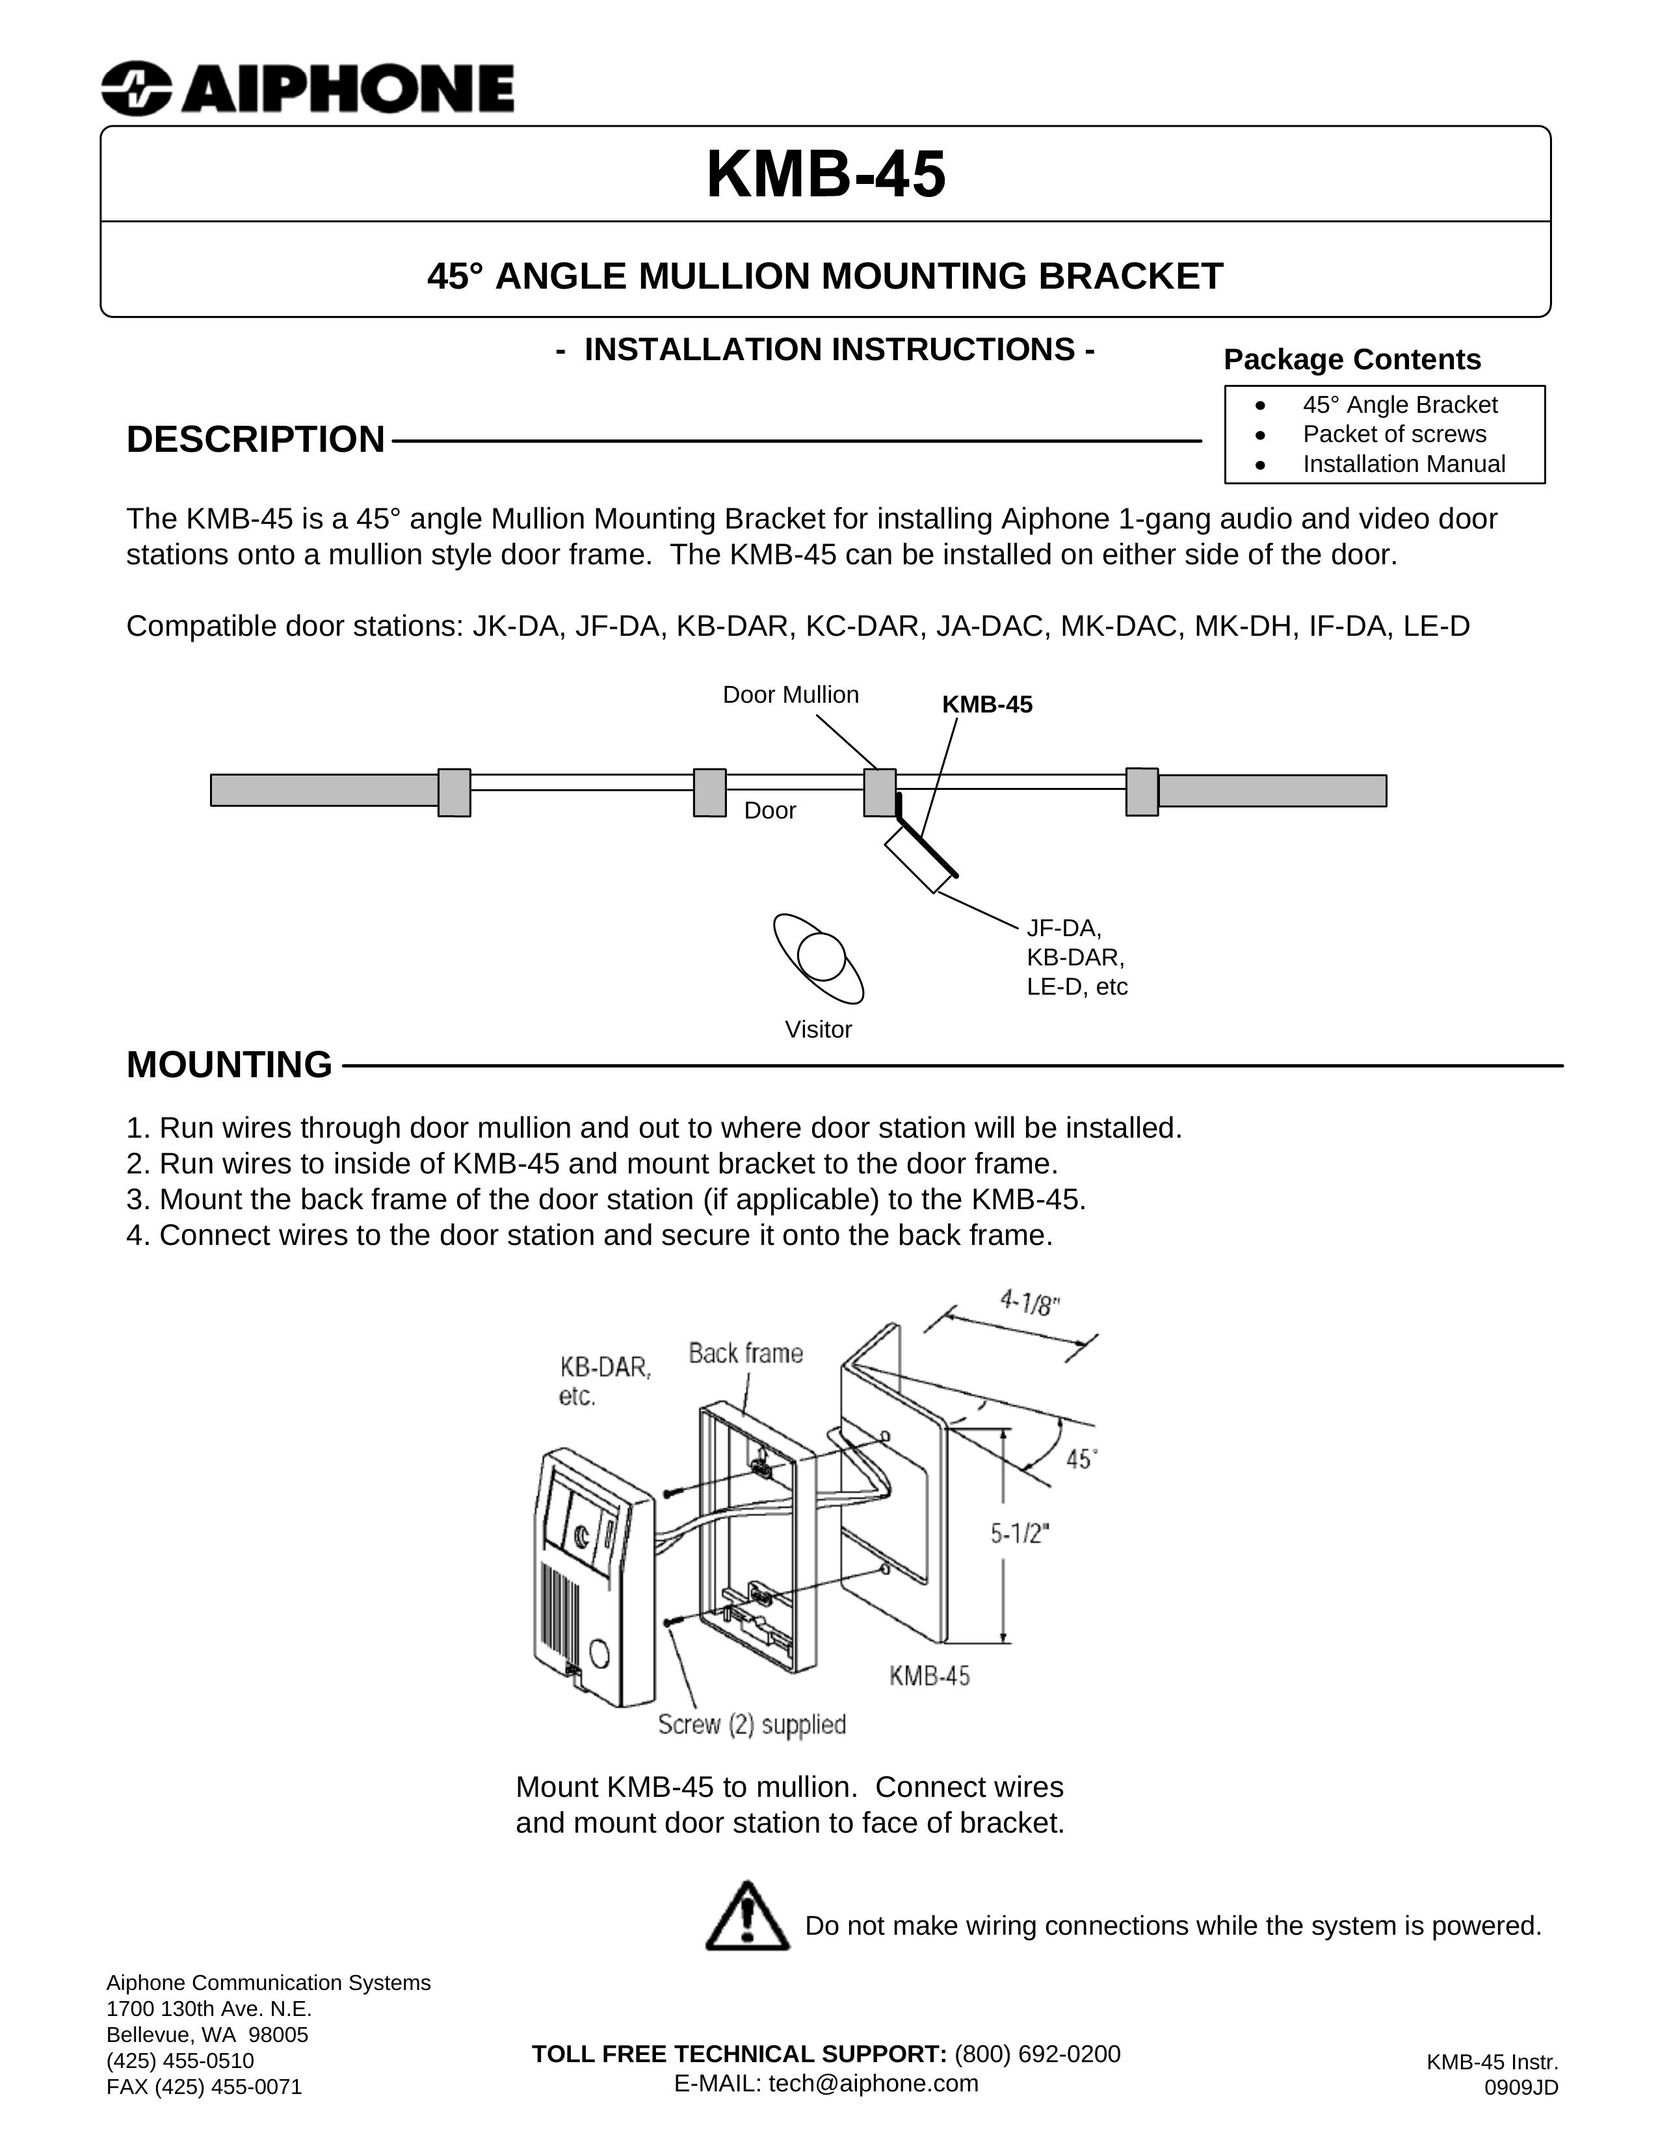 Aiphone KMB-45 Welder User Manual